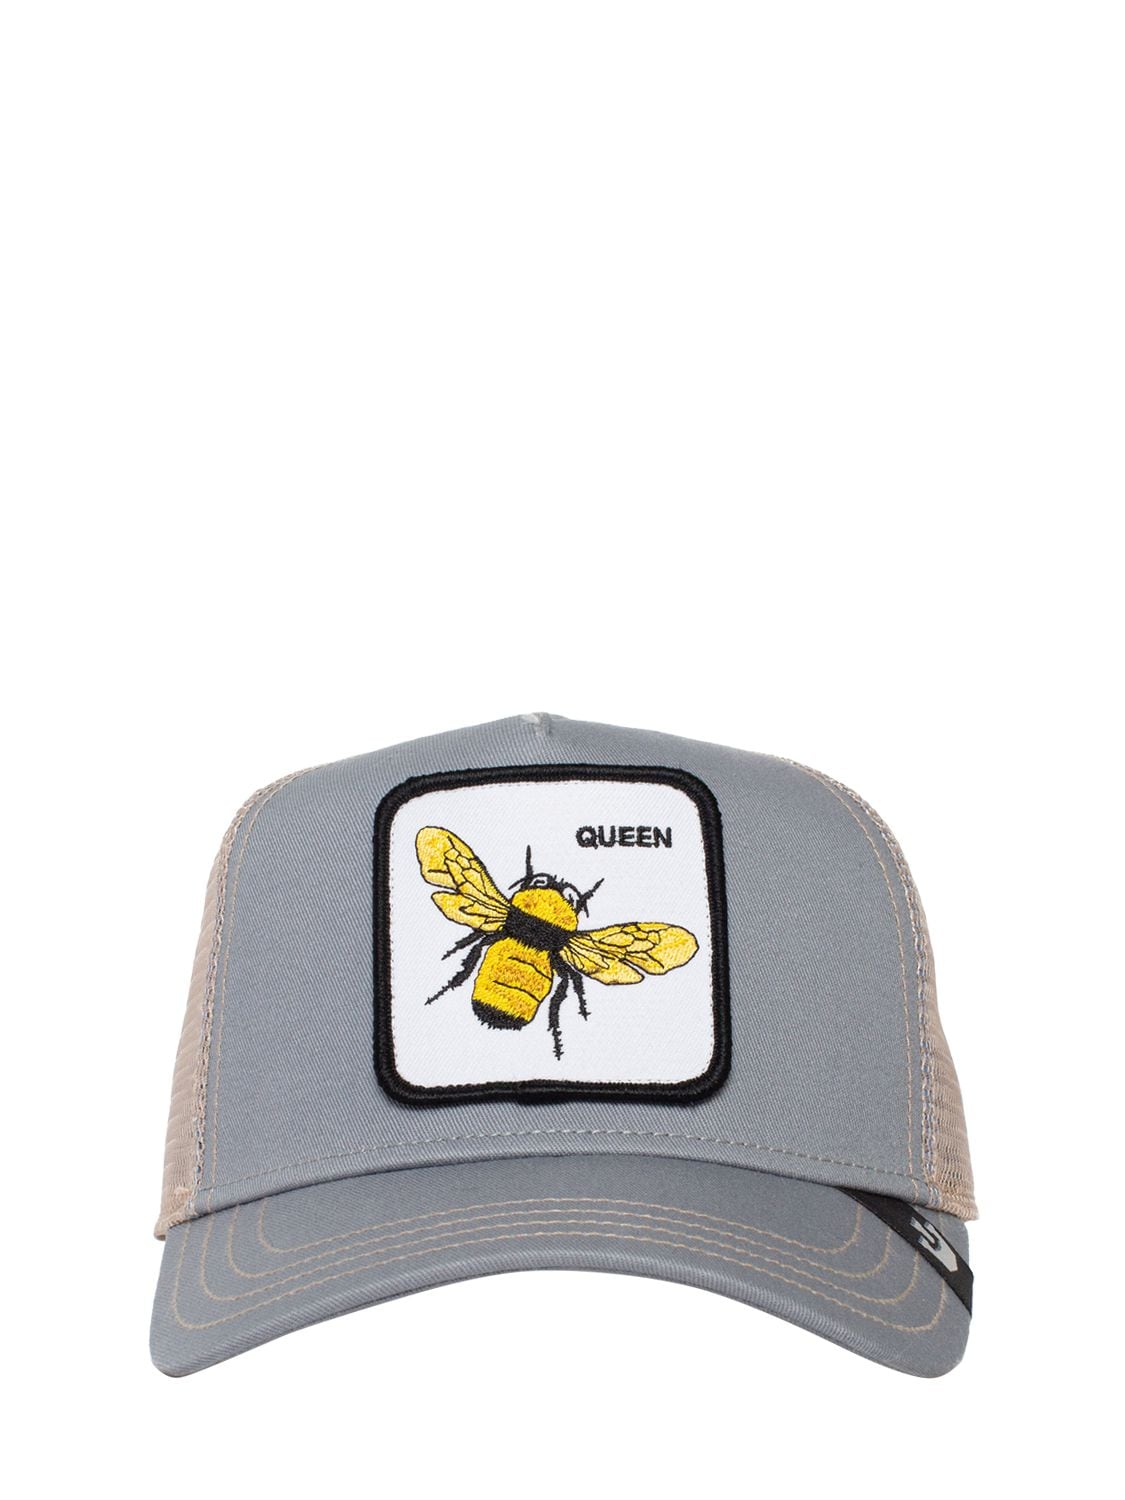 Goorin Bros Queen Bee Trucker Hat W/ Patch In Grey,multi